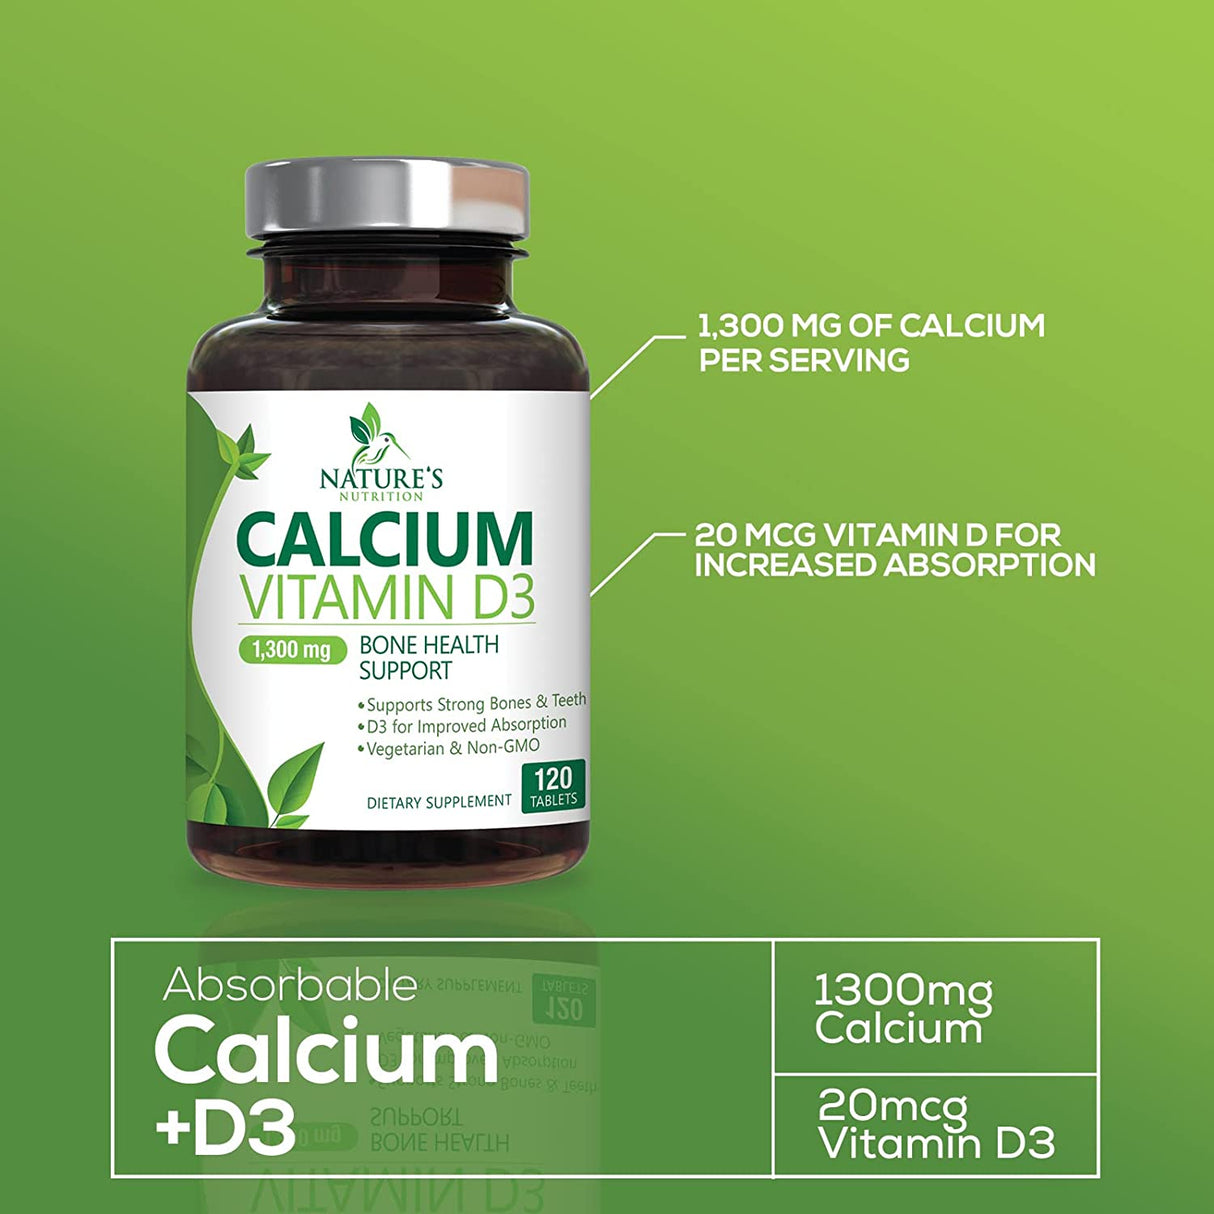 Nature´s Nutrition Calcium Vitamin D3 120 Tabletas